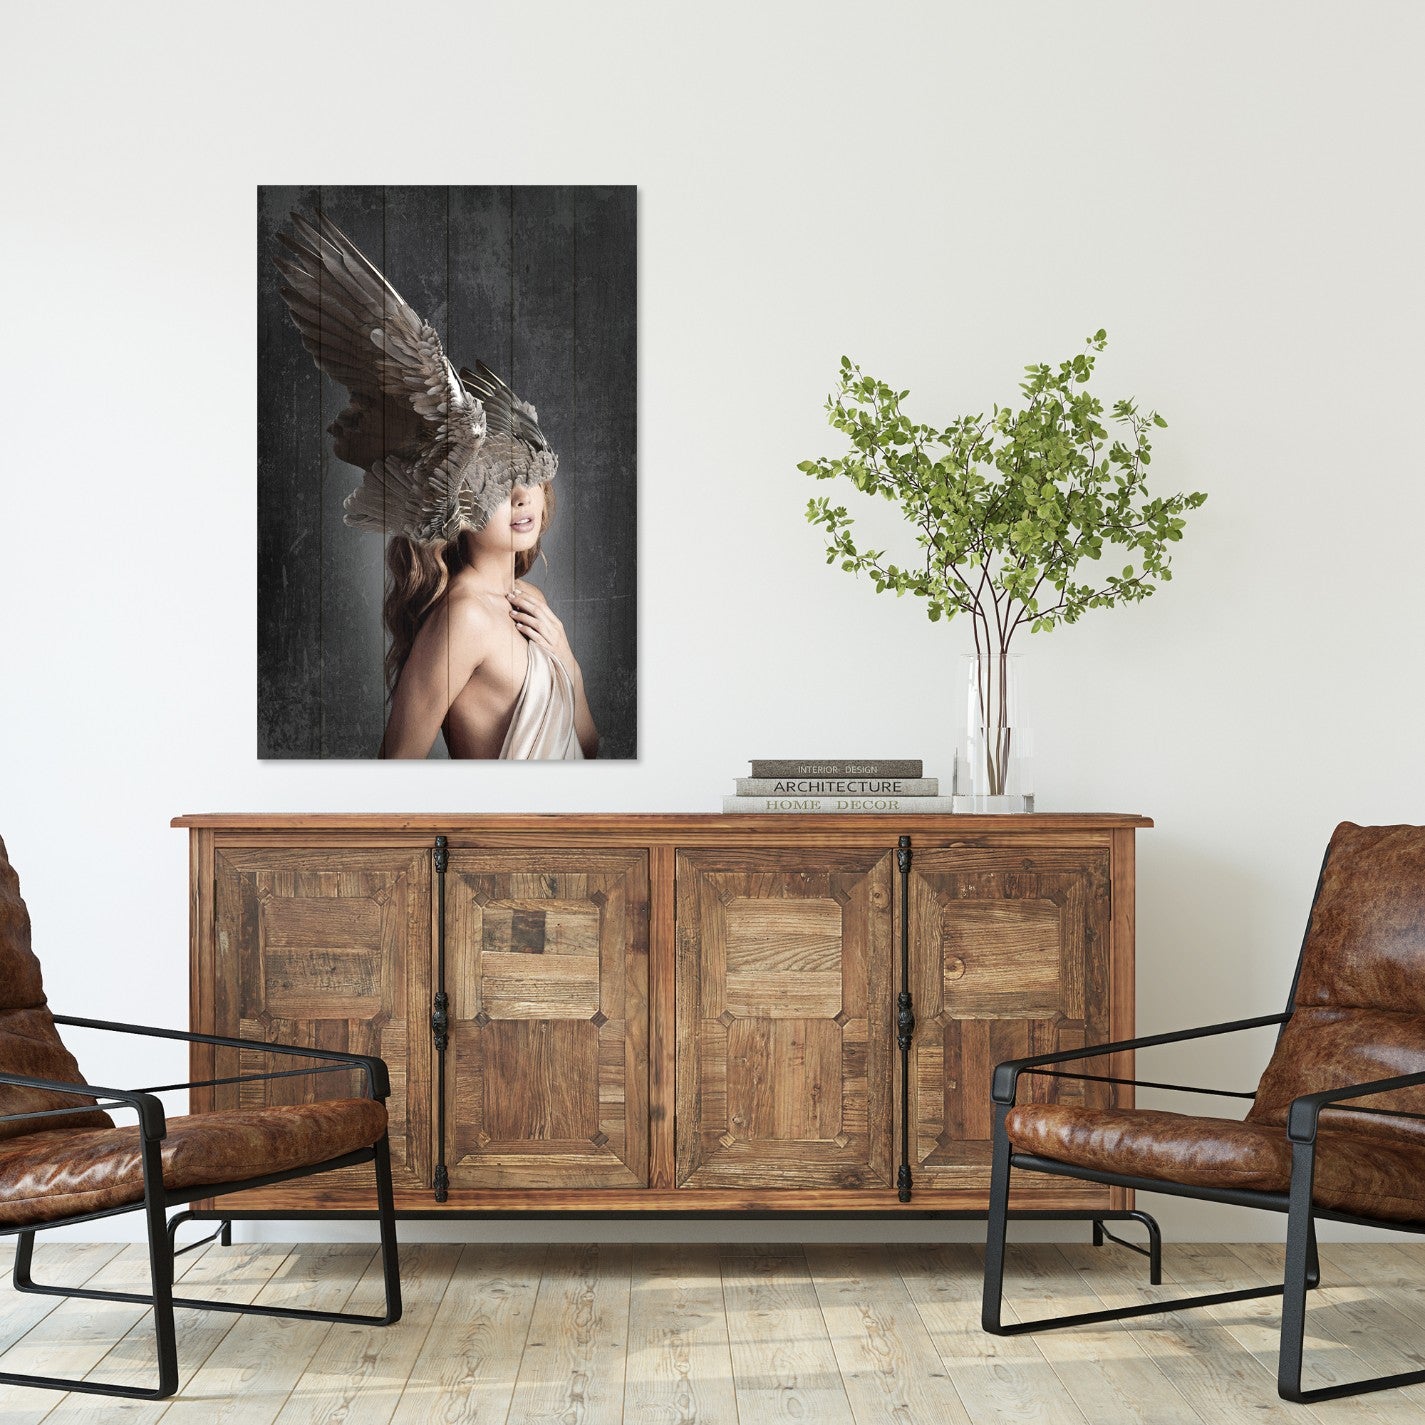 Obraz na drewnie Kobieta z ciemnymi skrzydłami - Brown Wings on the Head